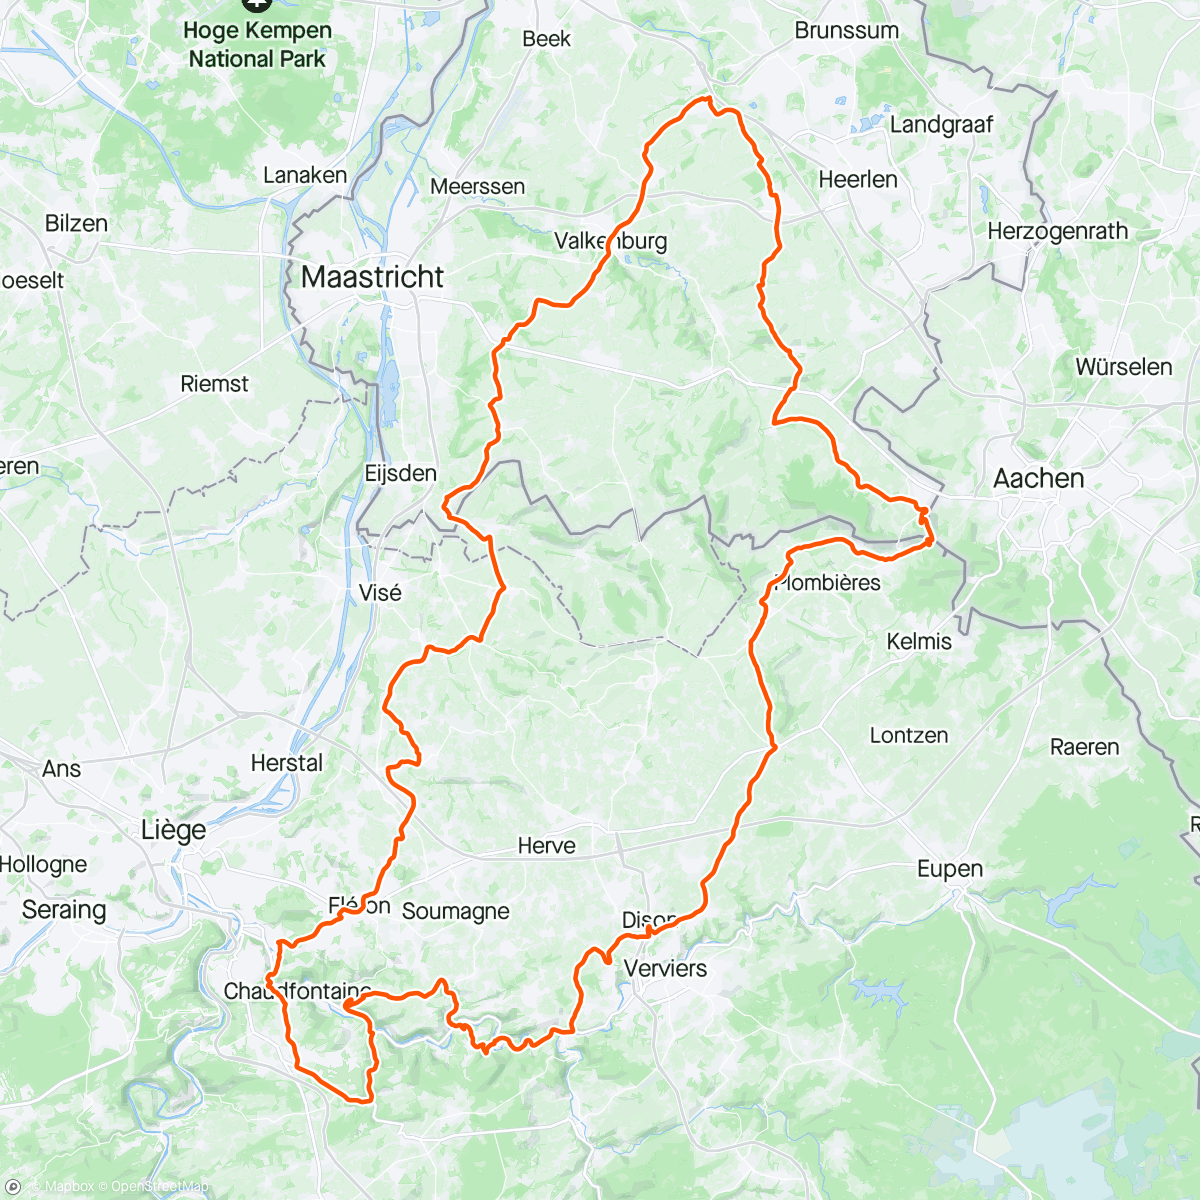 「Tour vanuit het mooie Limburg door drie landen met Guido」活動的地圖